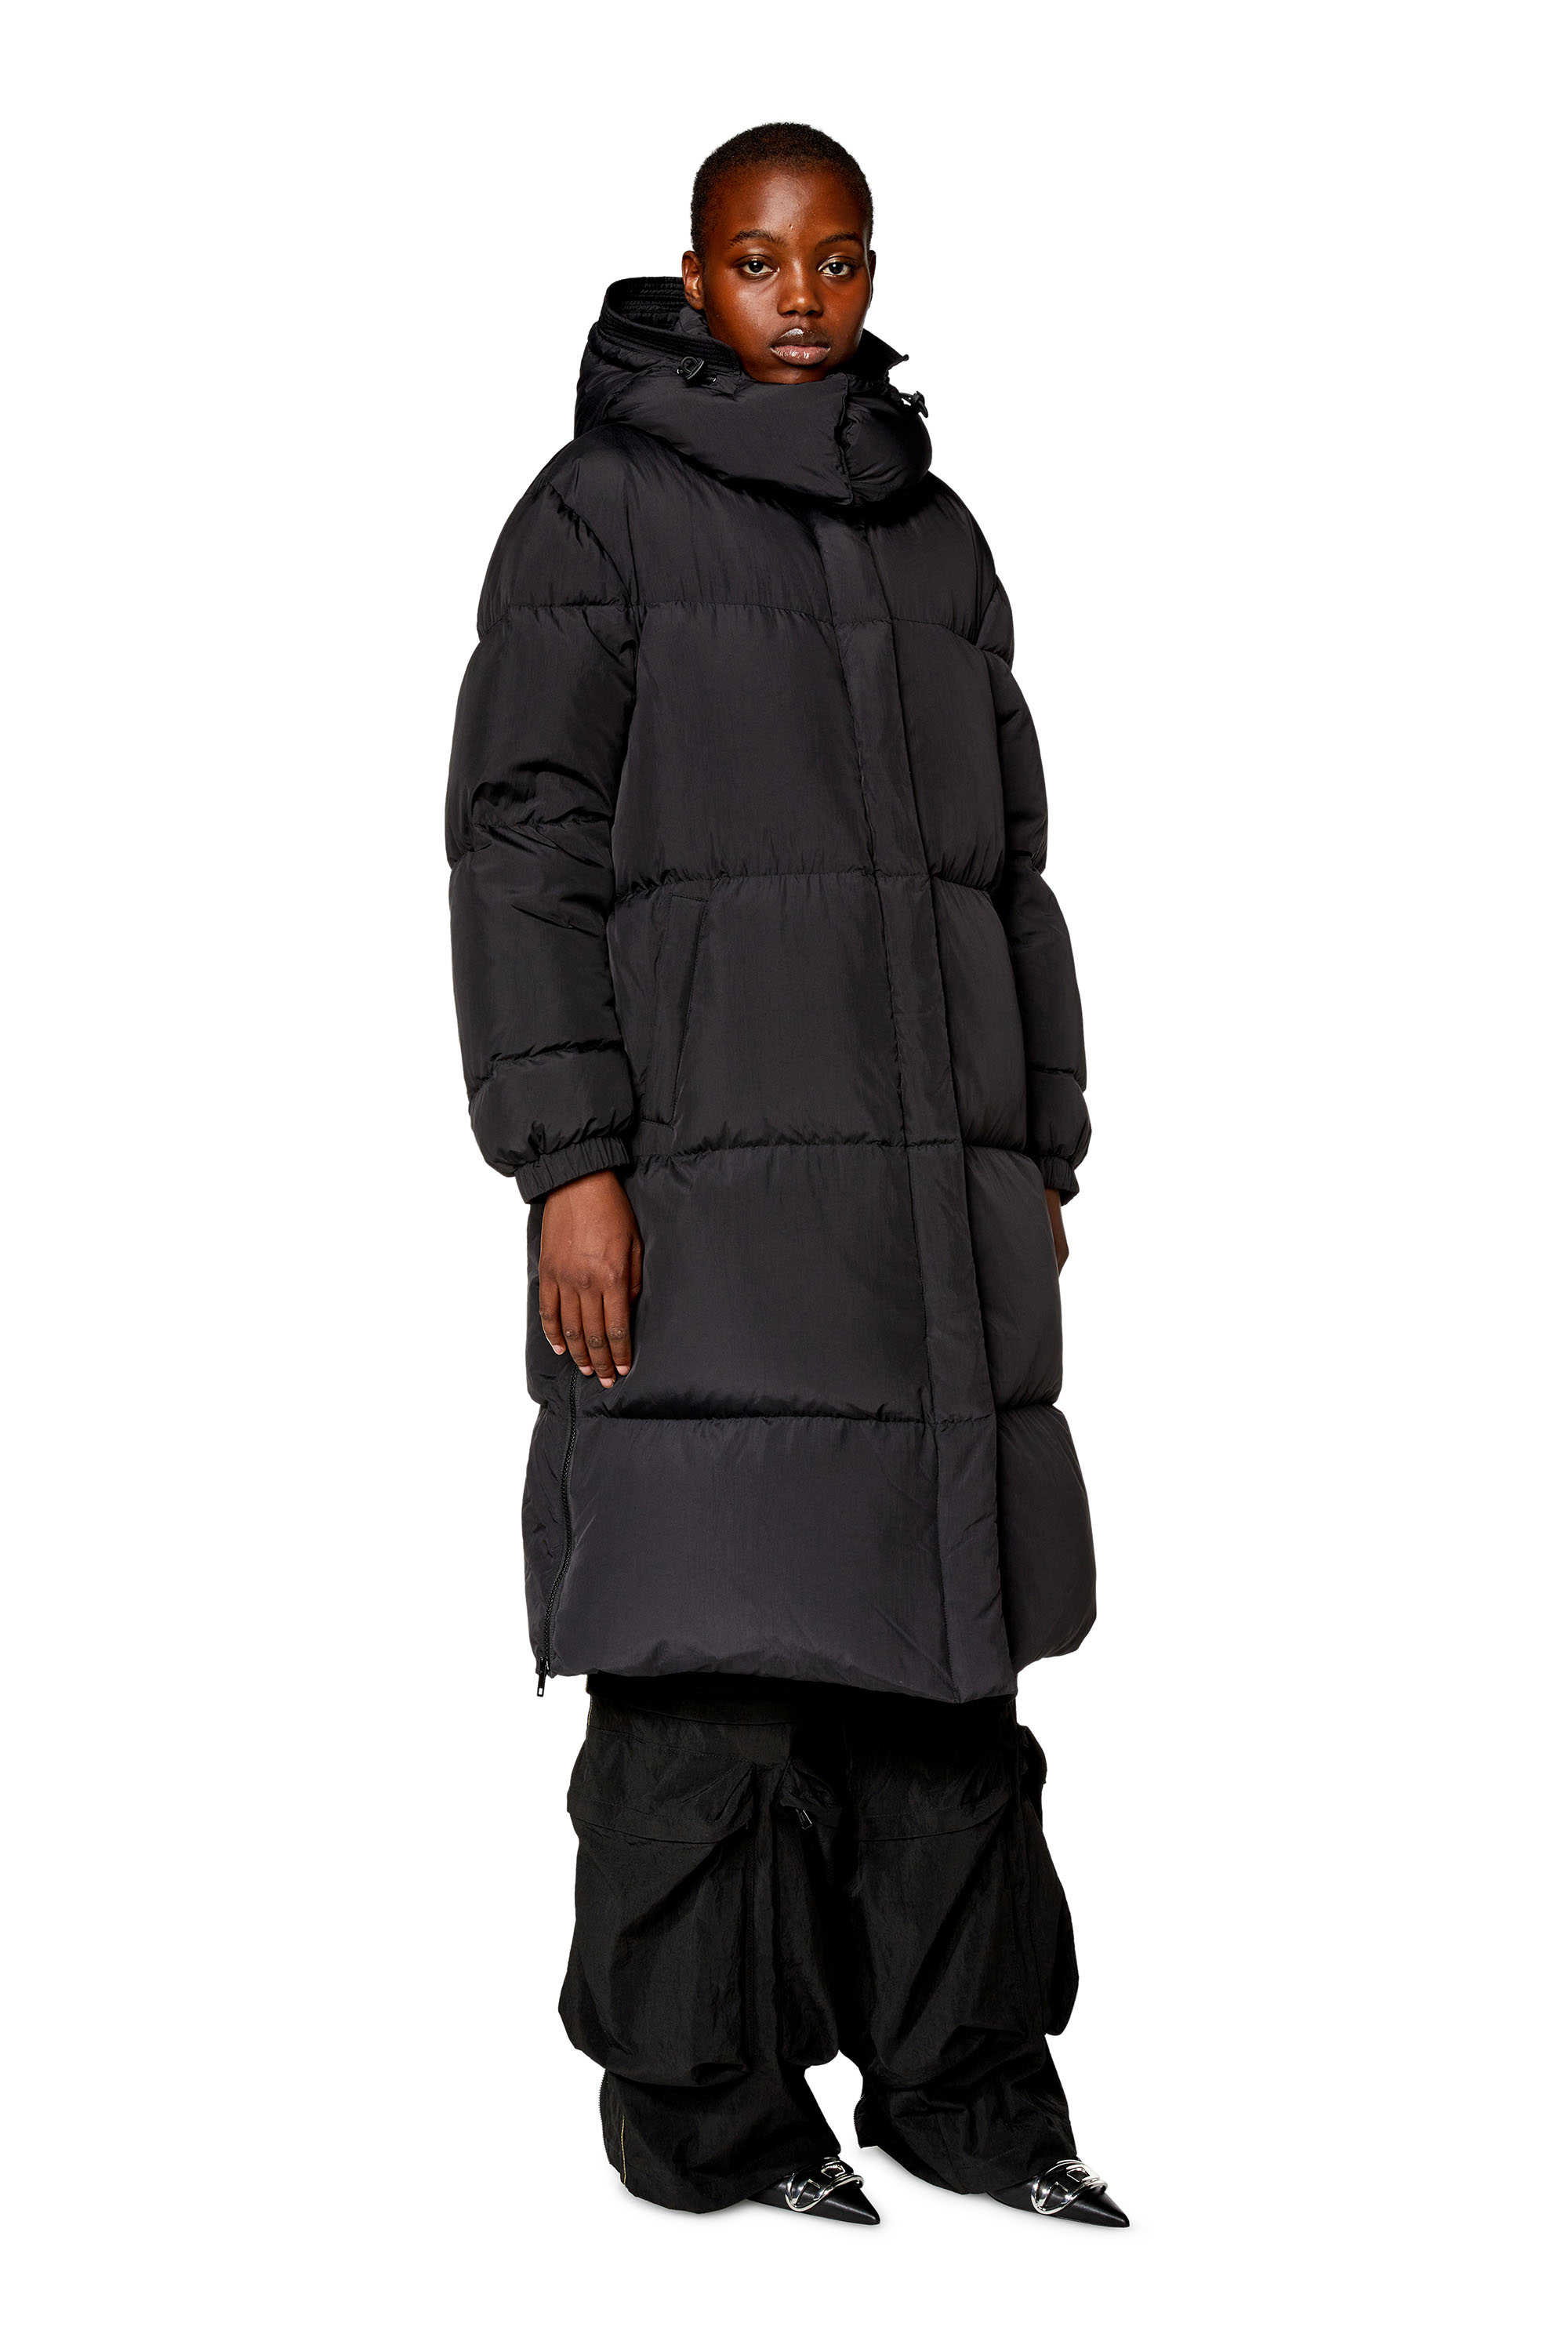 Diesel - W-PEYT, Woman Down coat in recycled nylon taslan in Black - Image 2